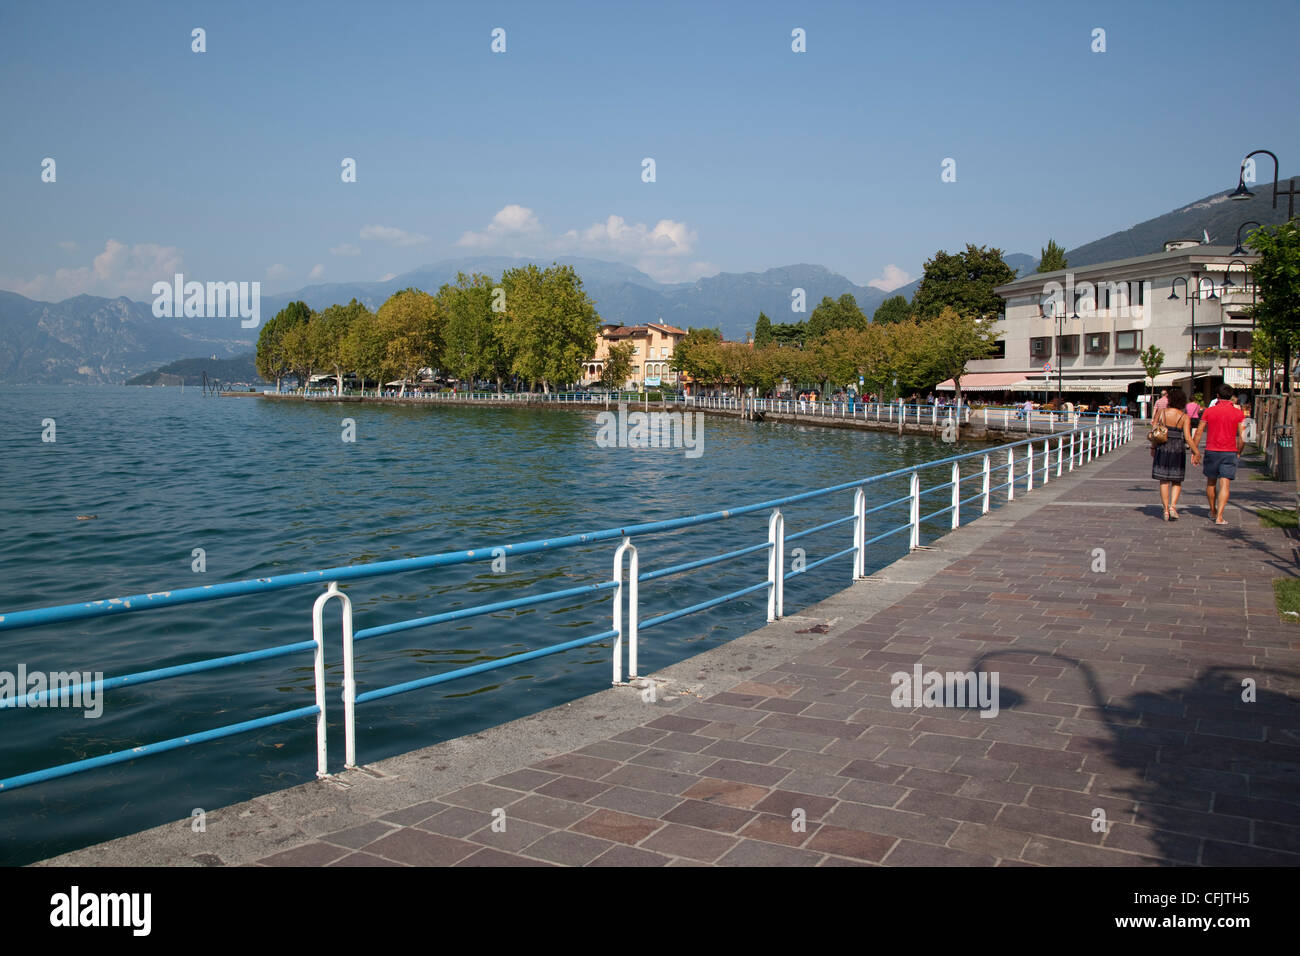 Promenade, Iseo, Lake Iseo, Lombardy, Italian Lakes, Italy, Europe Stock Photo